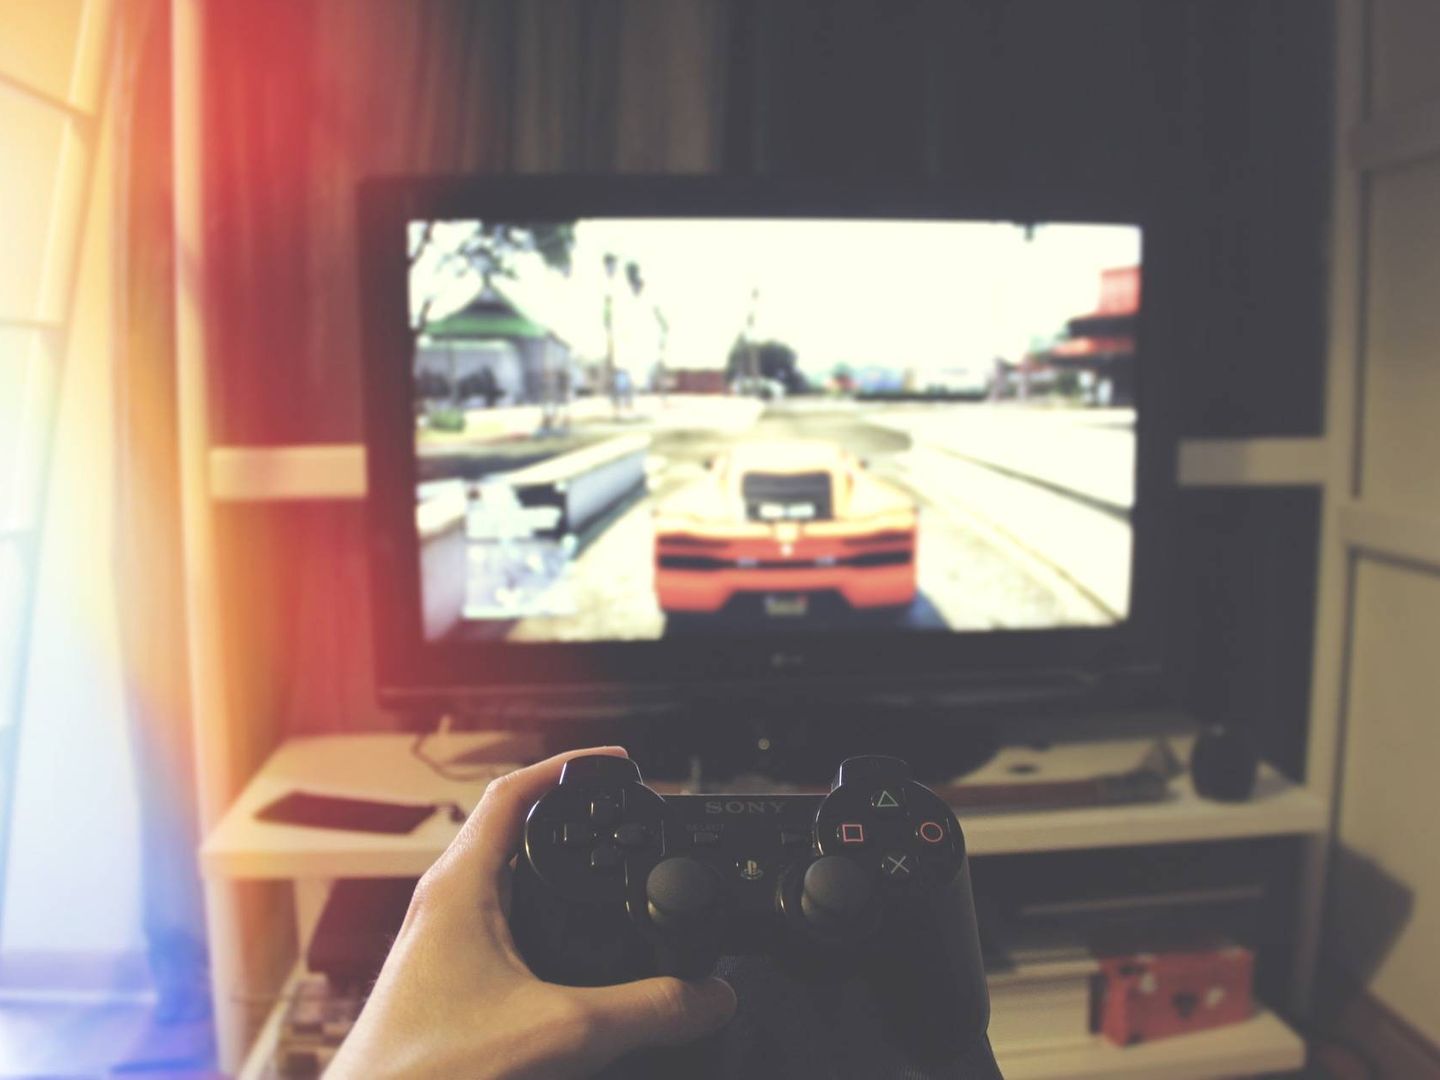 Jugar en un televisor es fácil y agradable con un calibrado adecuado. (Pixabay)